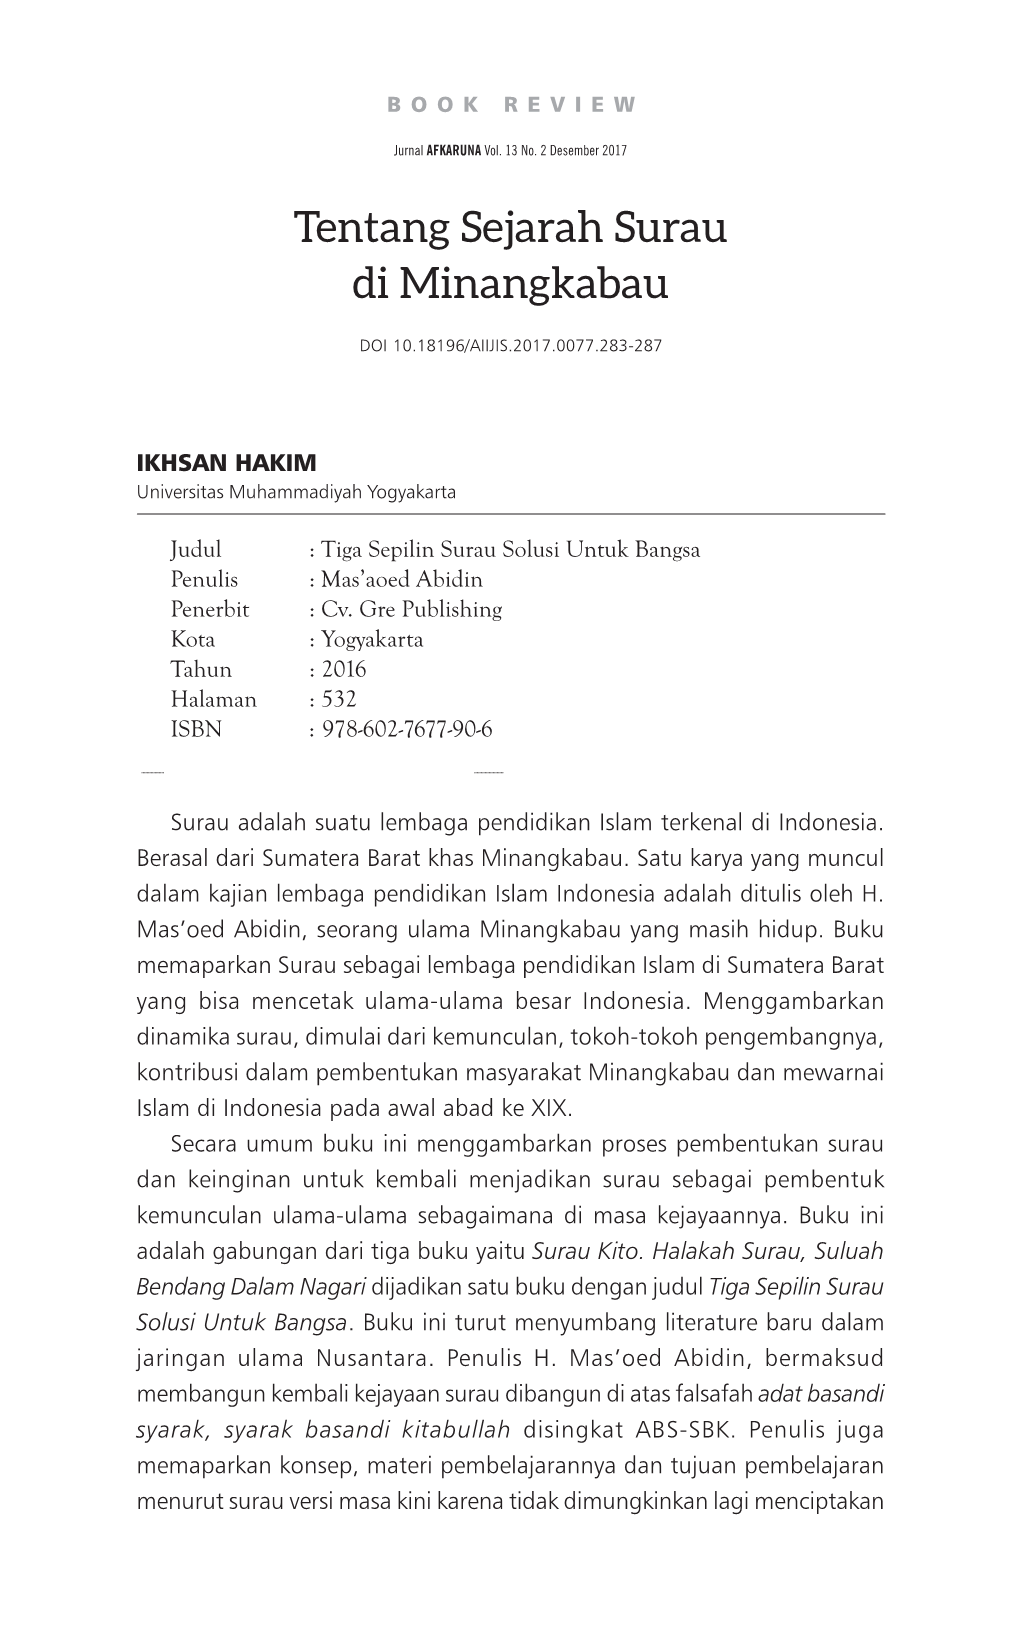 Tentang Sejarah Surau Di Minangkabau